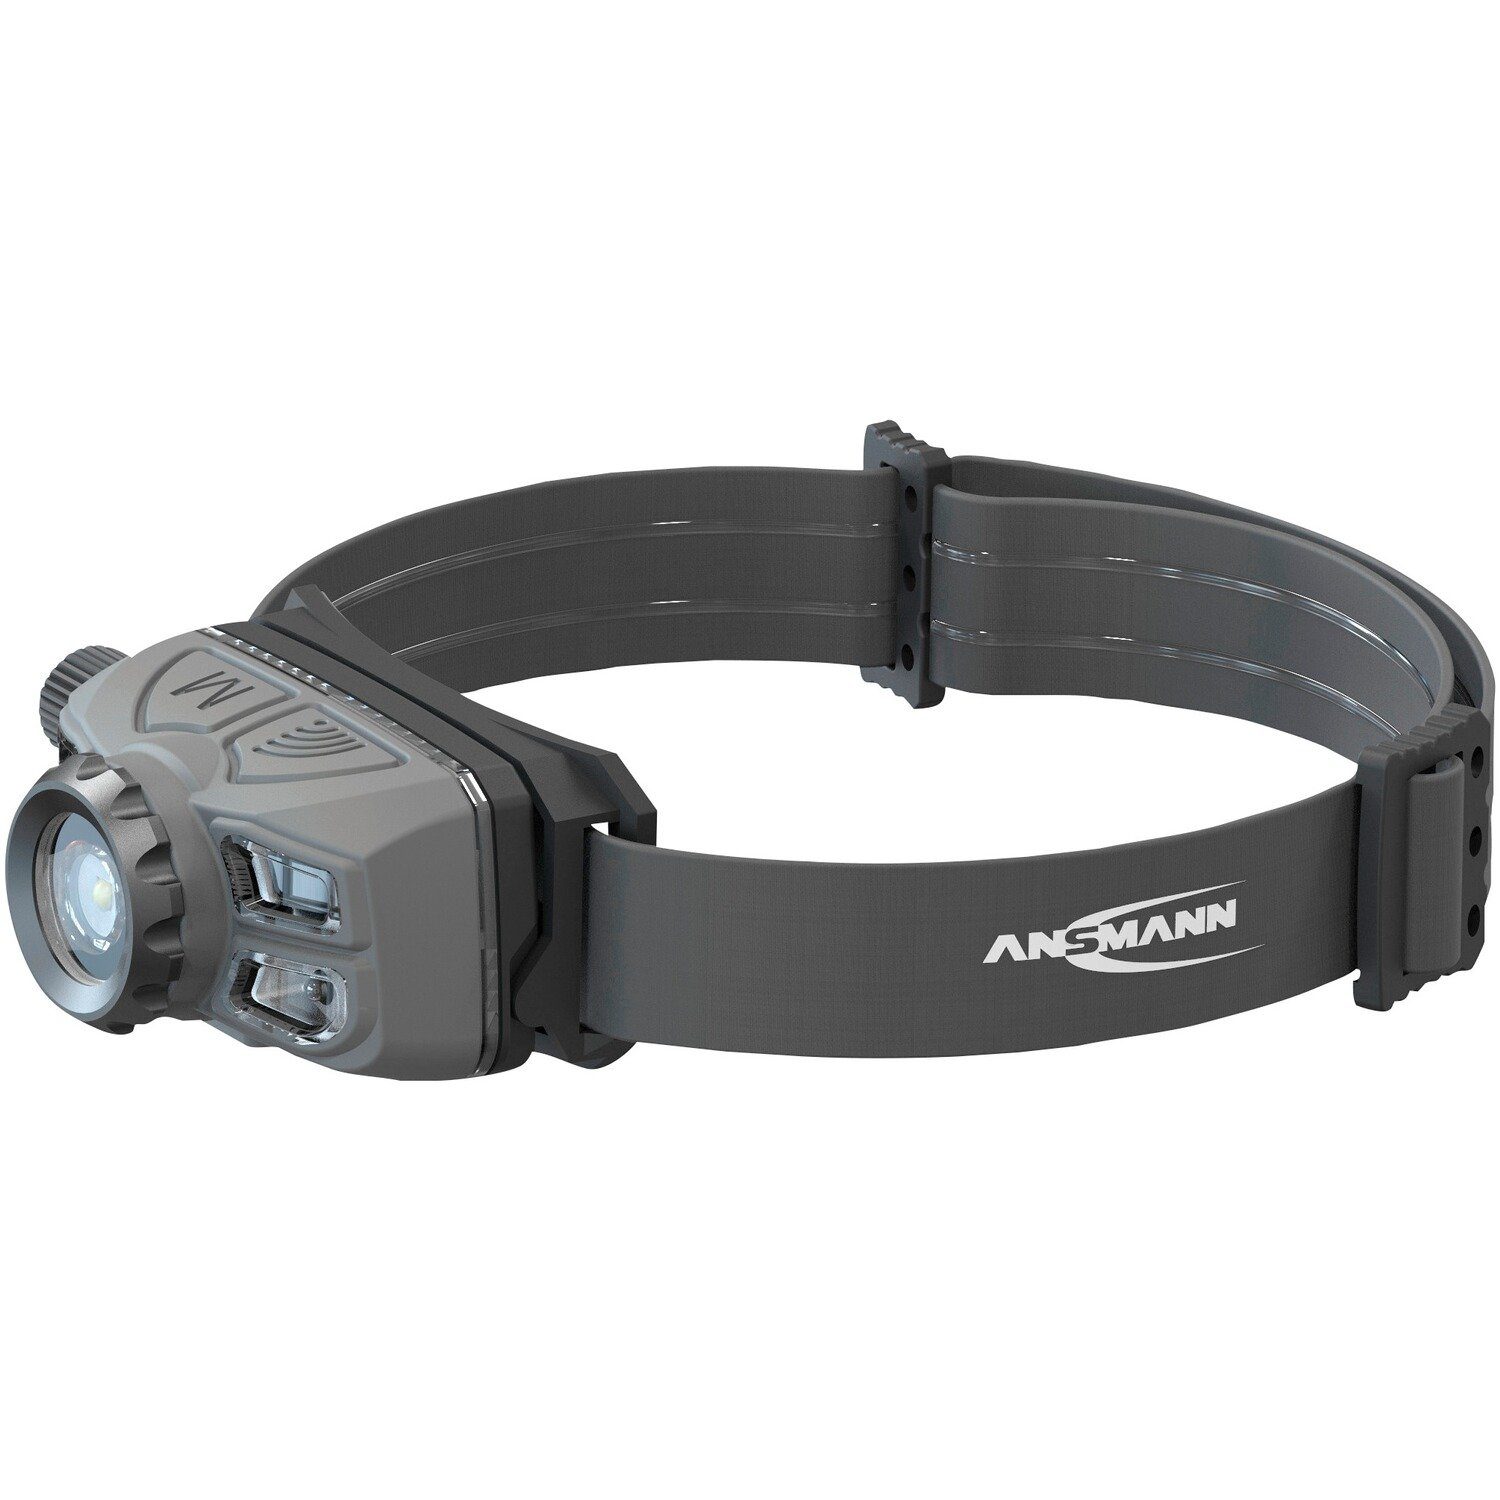 aufladbar – Stirnlampe ANSMANN® HD450FRS Stirnlampe